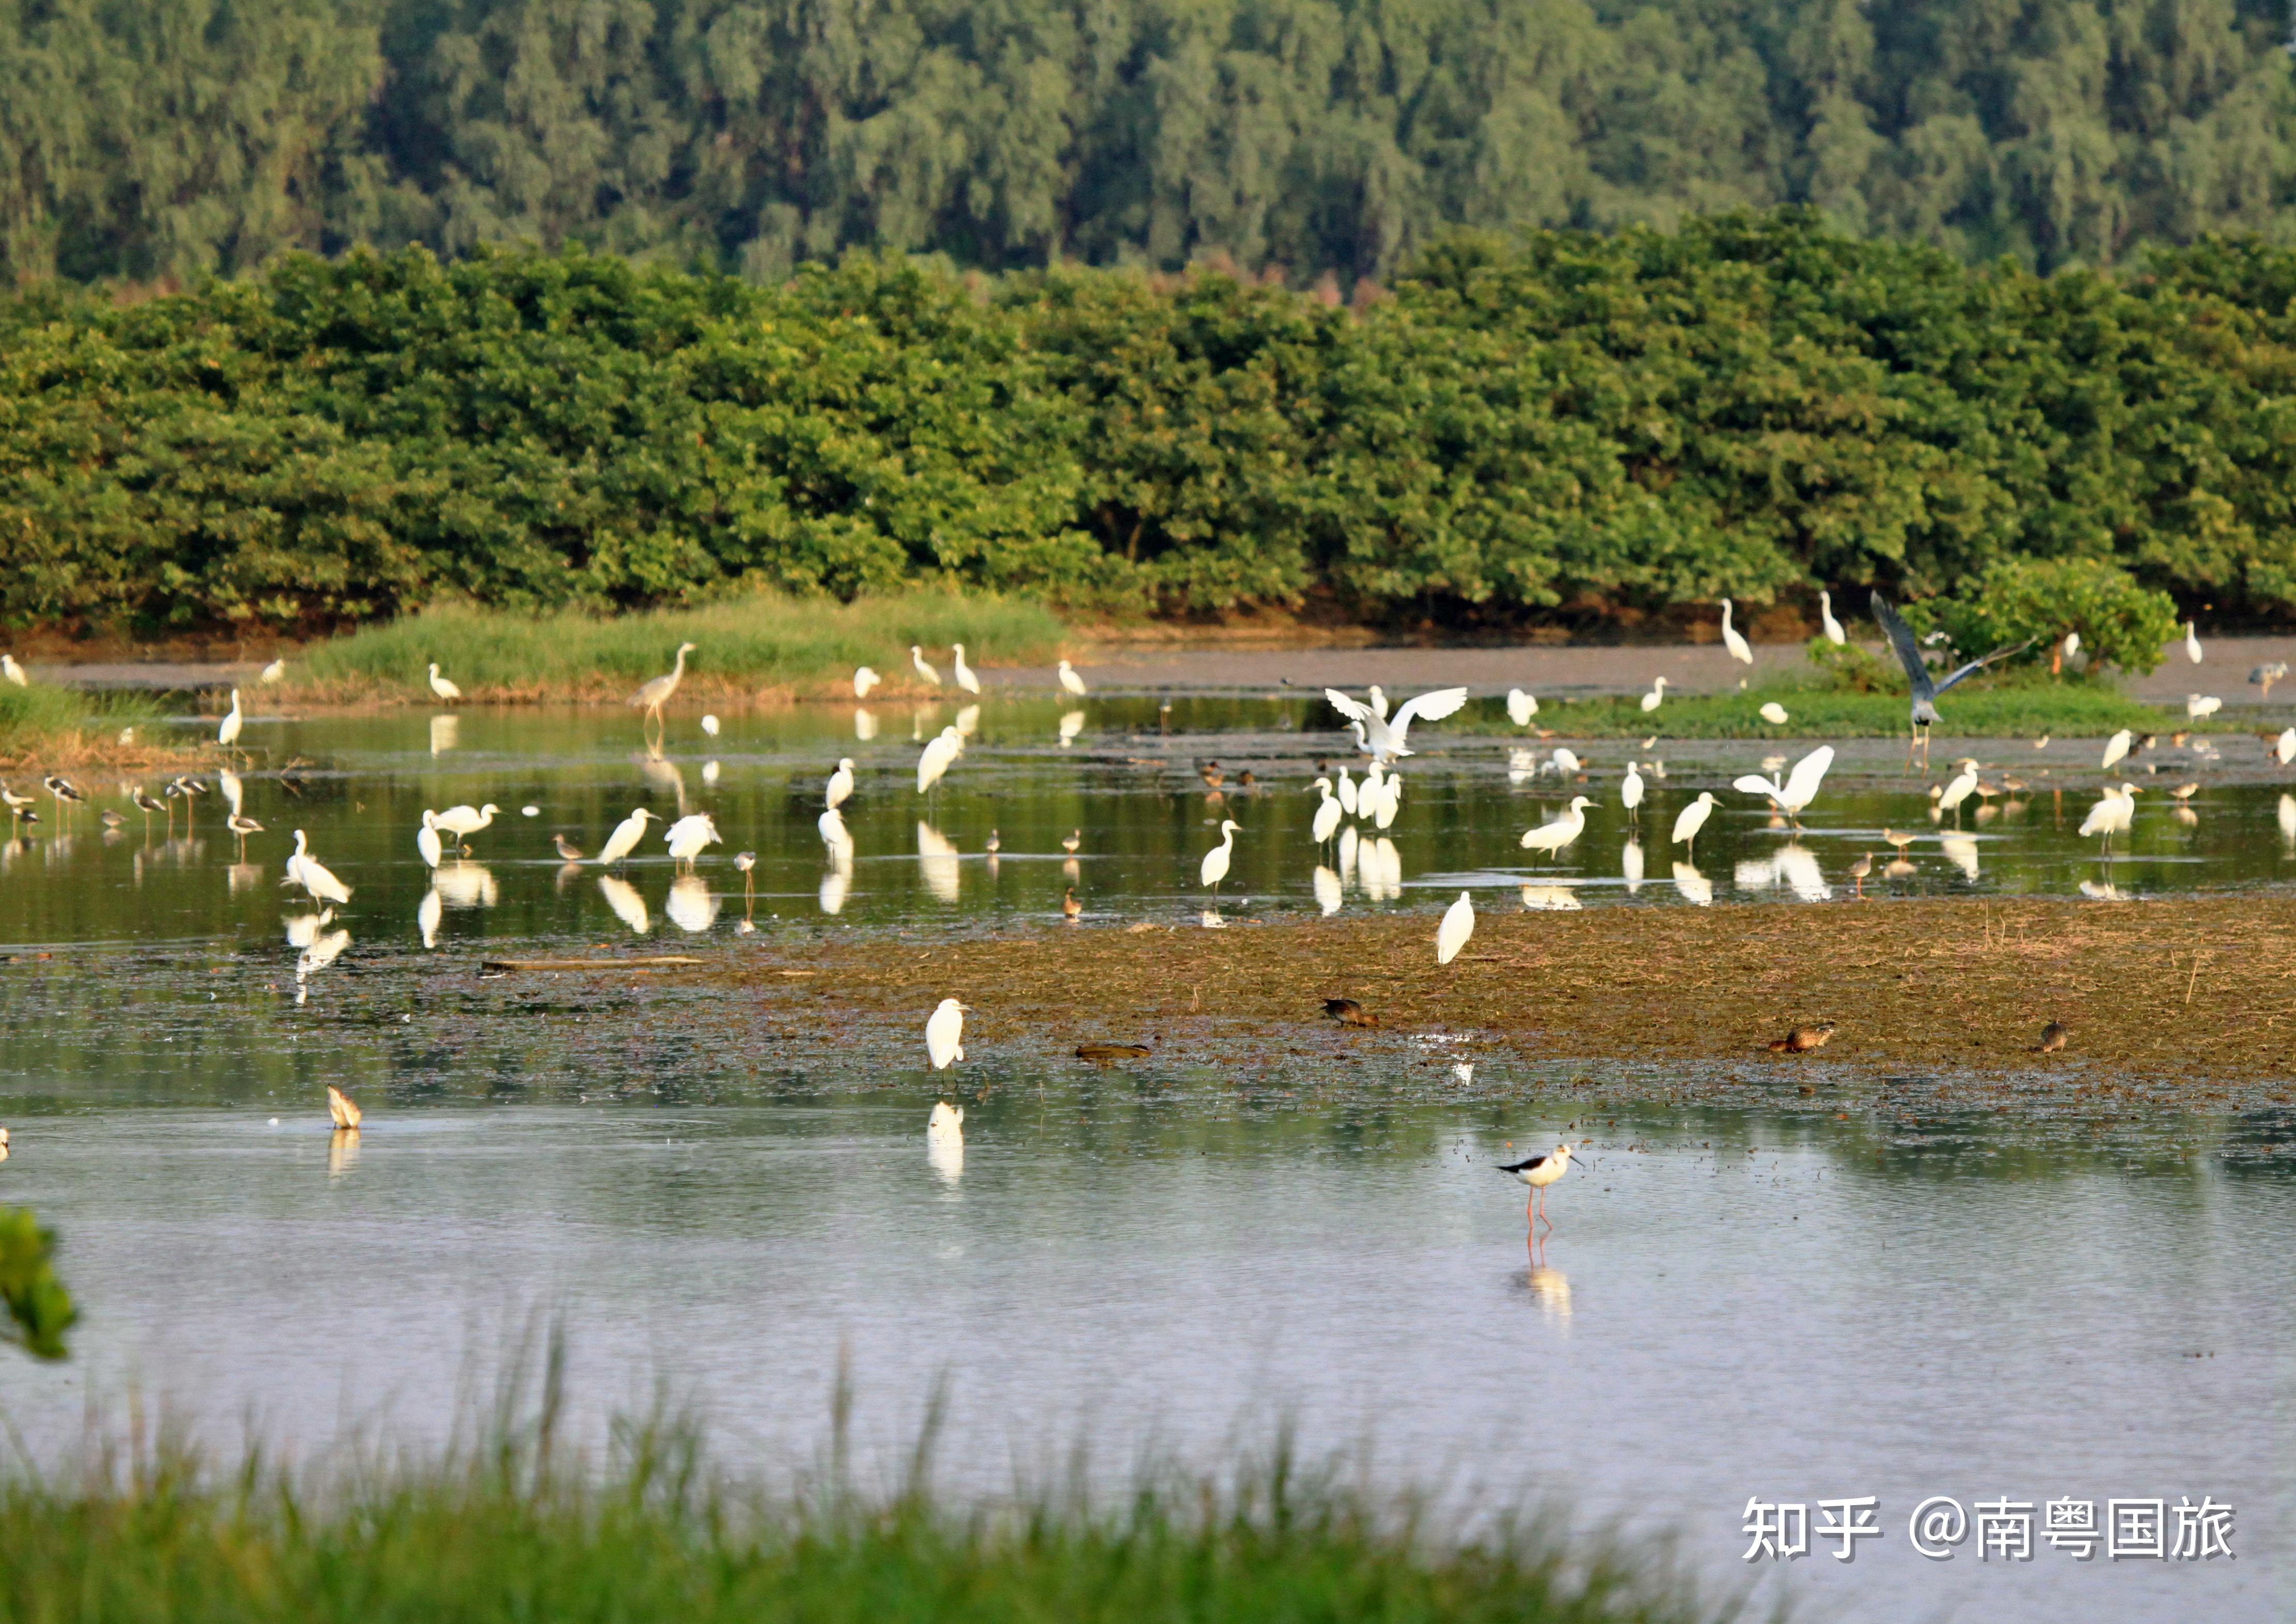 南沙湿地公园位于广州市最南端,地处珠江出海口西岸的南沙区万顷沙镇